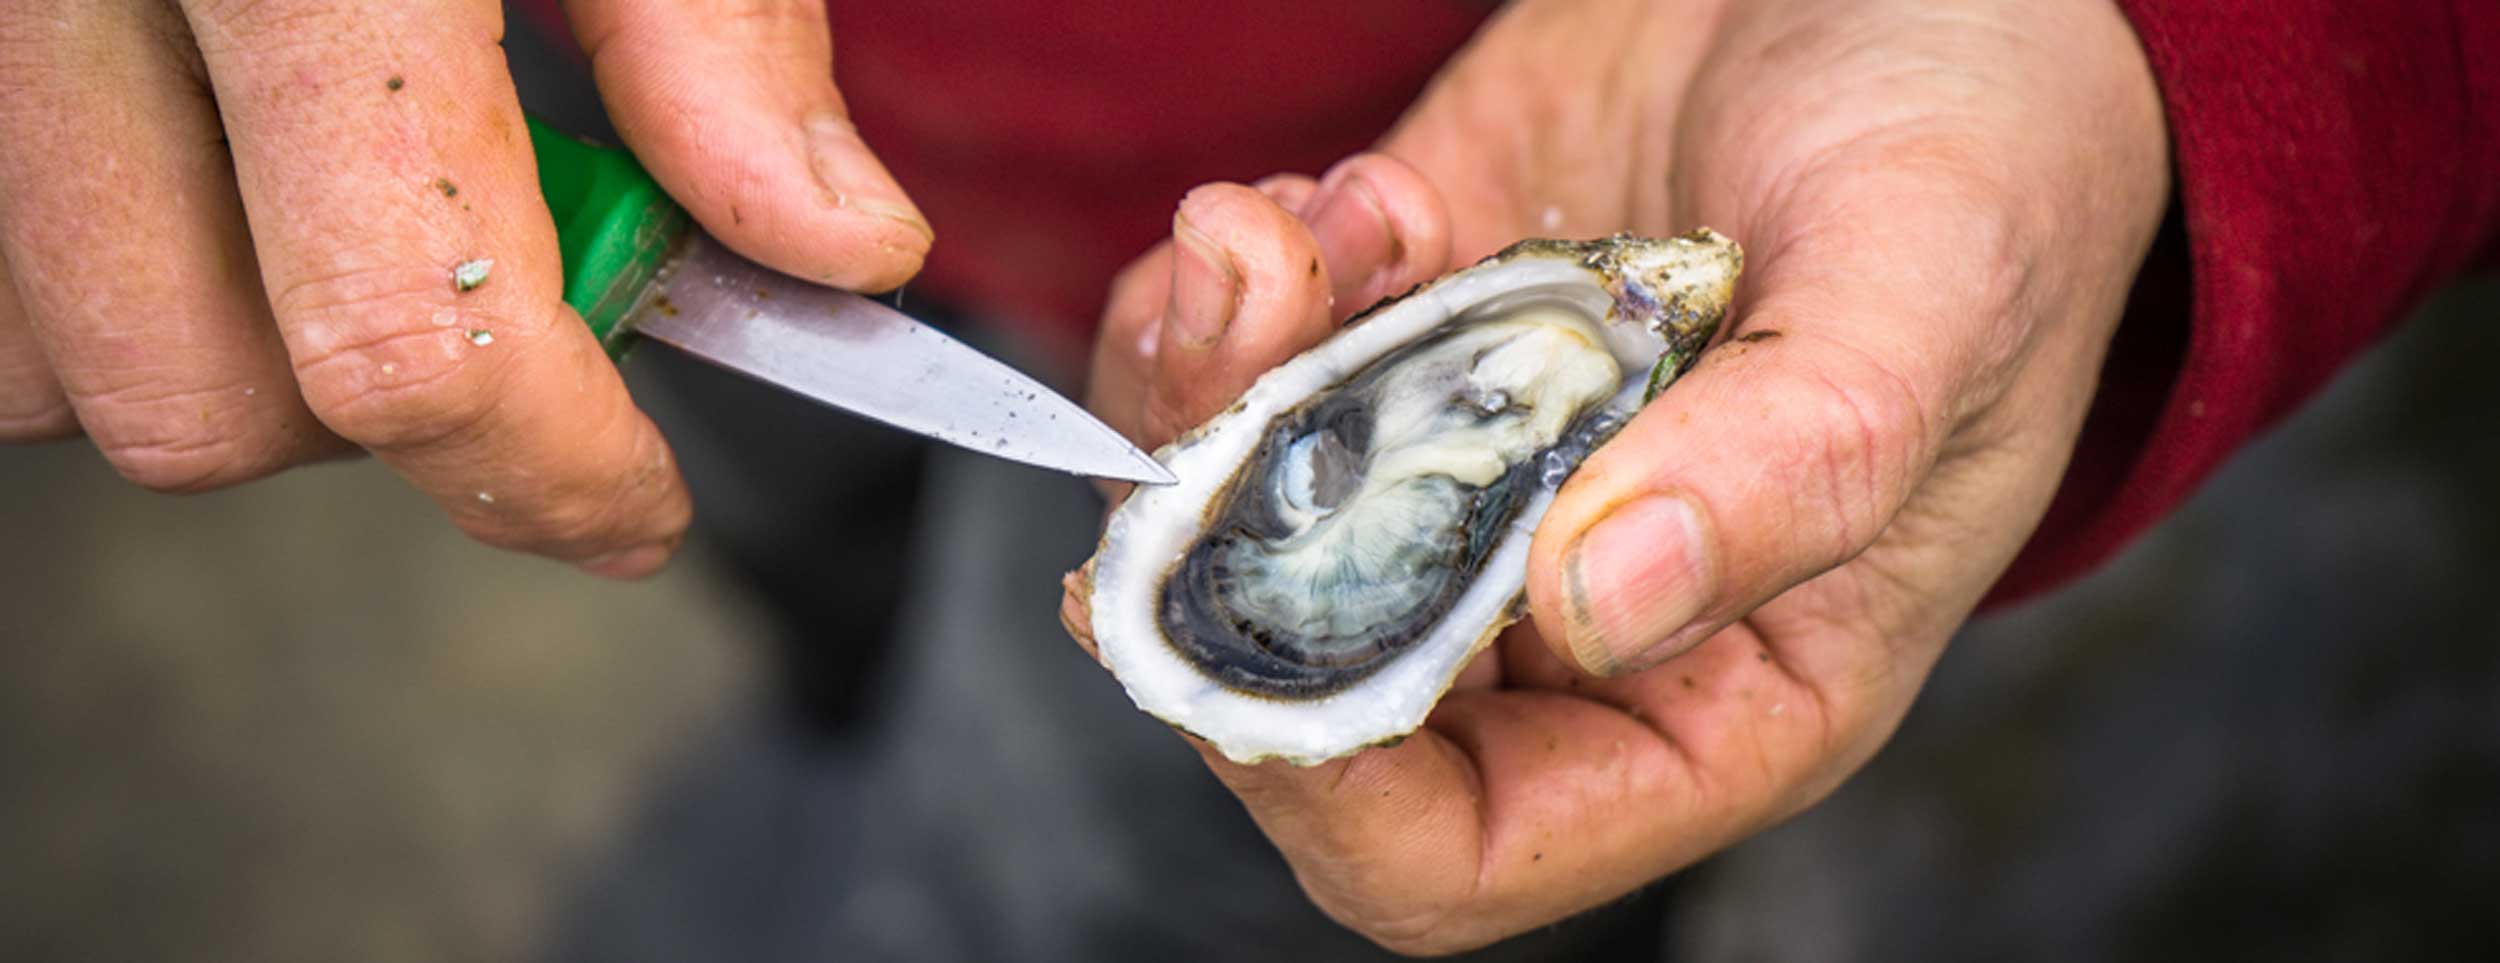 Acheter, conserver et ouvrir les huîtres du Bassin d'Arcachon Cap Ferret